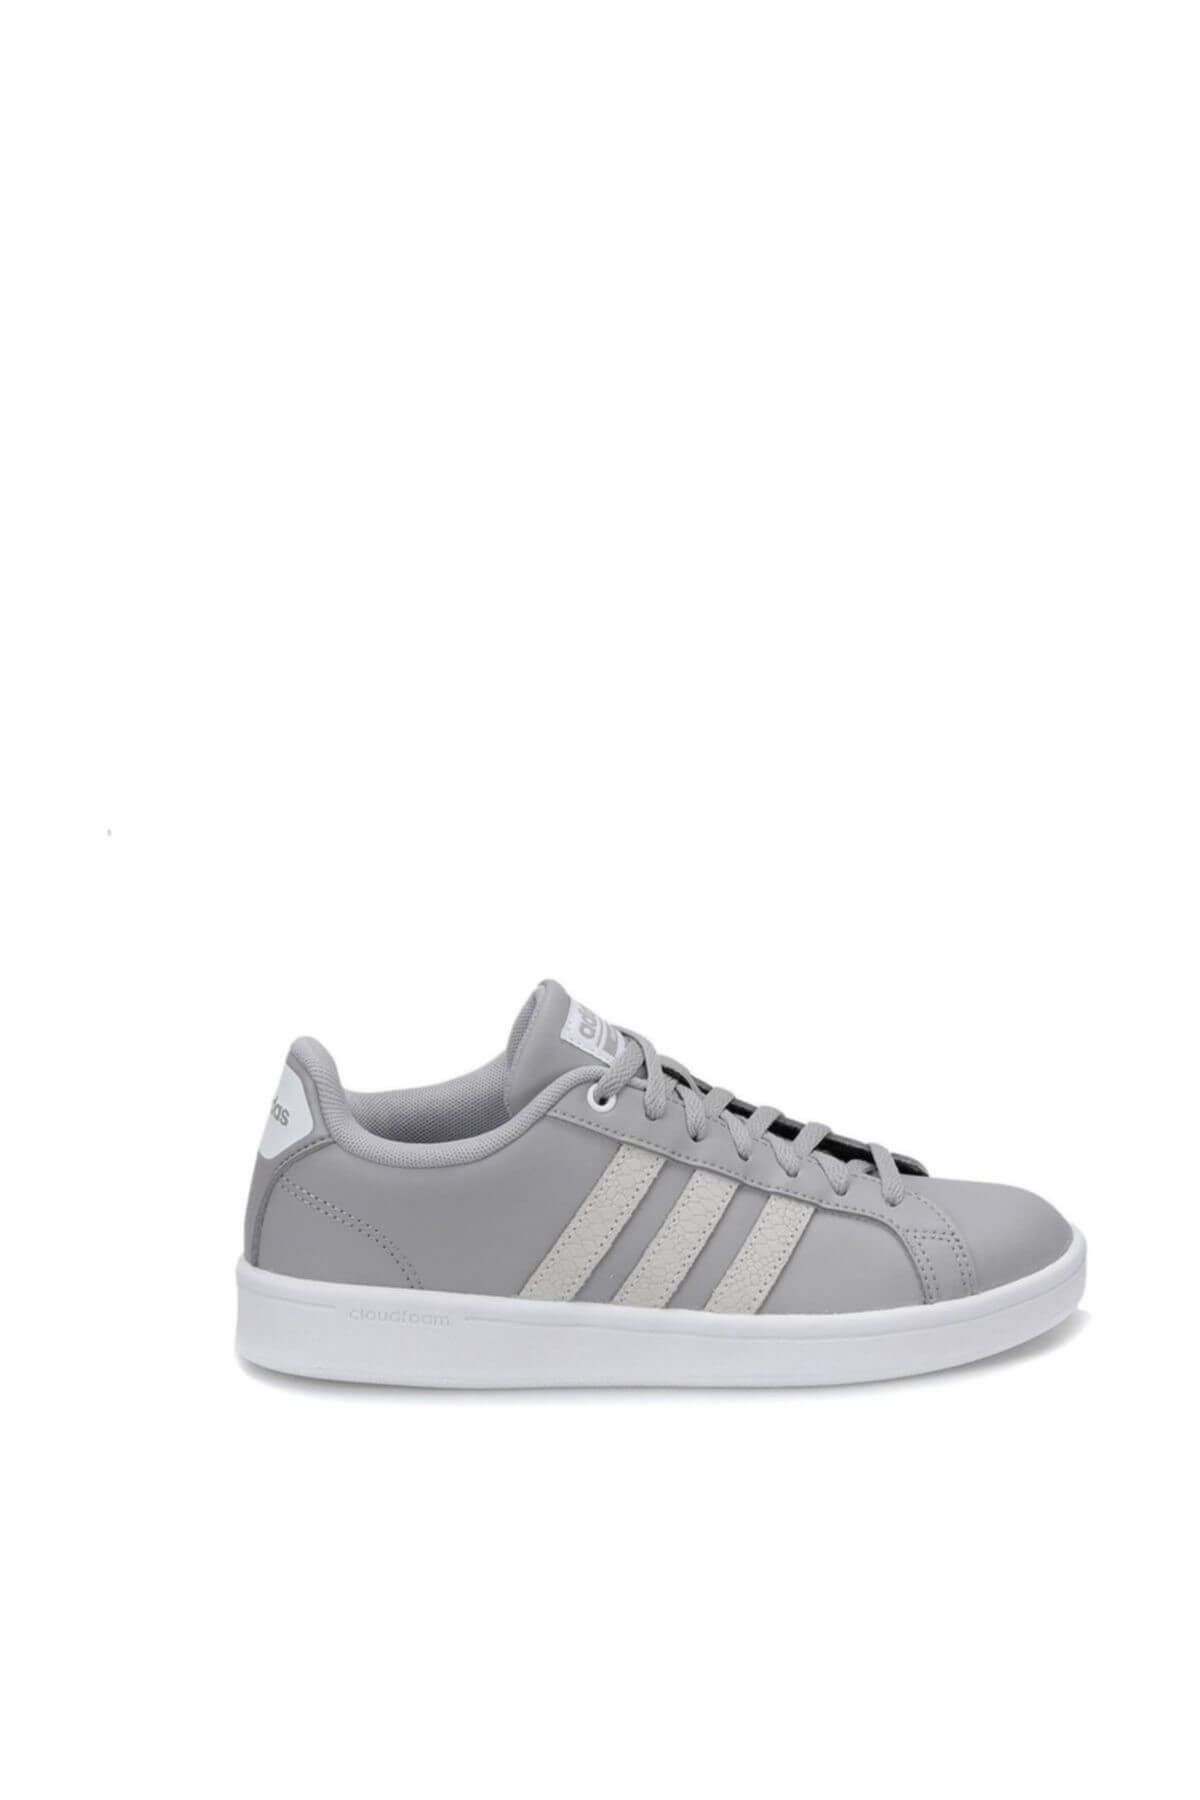 adidas Cf Advantage Gri Beyaz Kadın Sneaker Ayakkabı 100351838